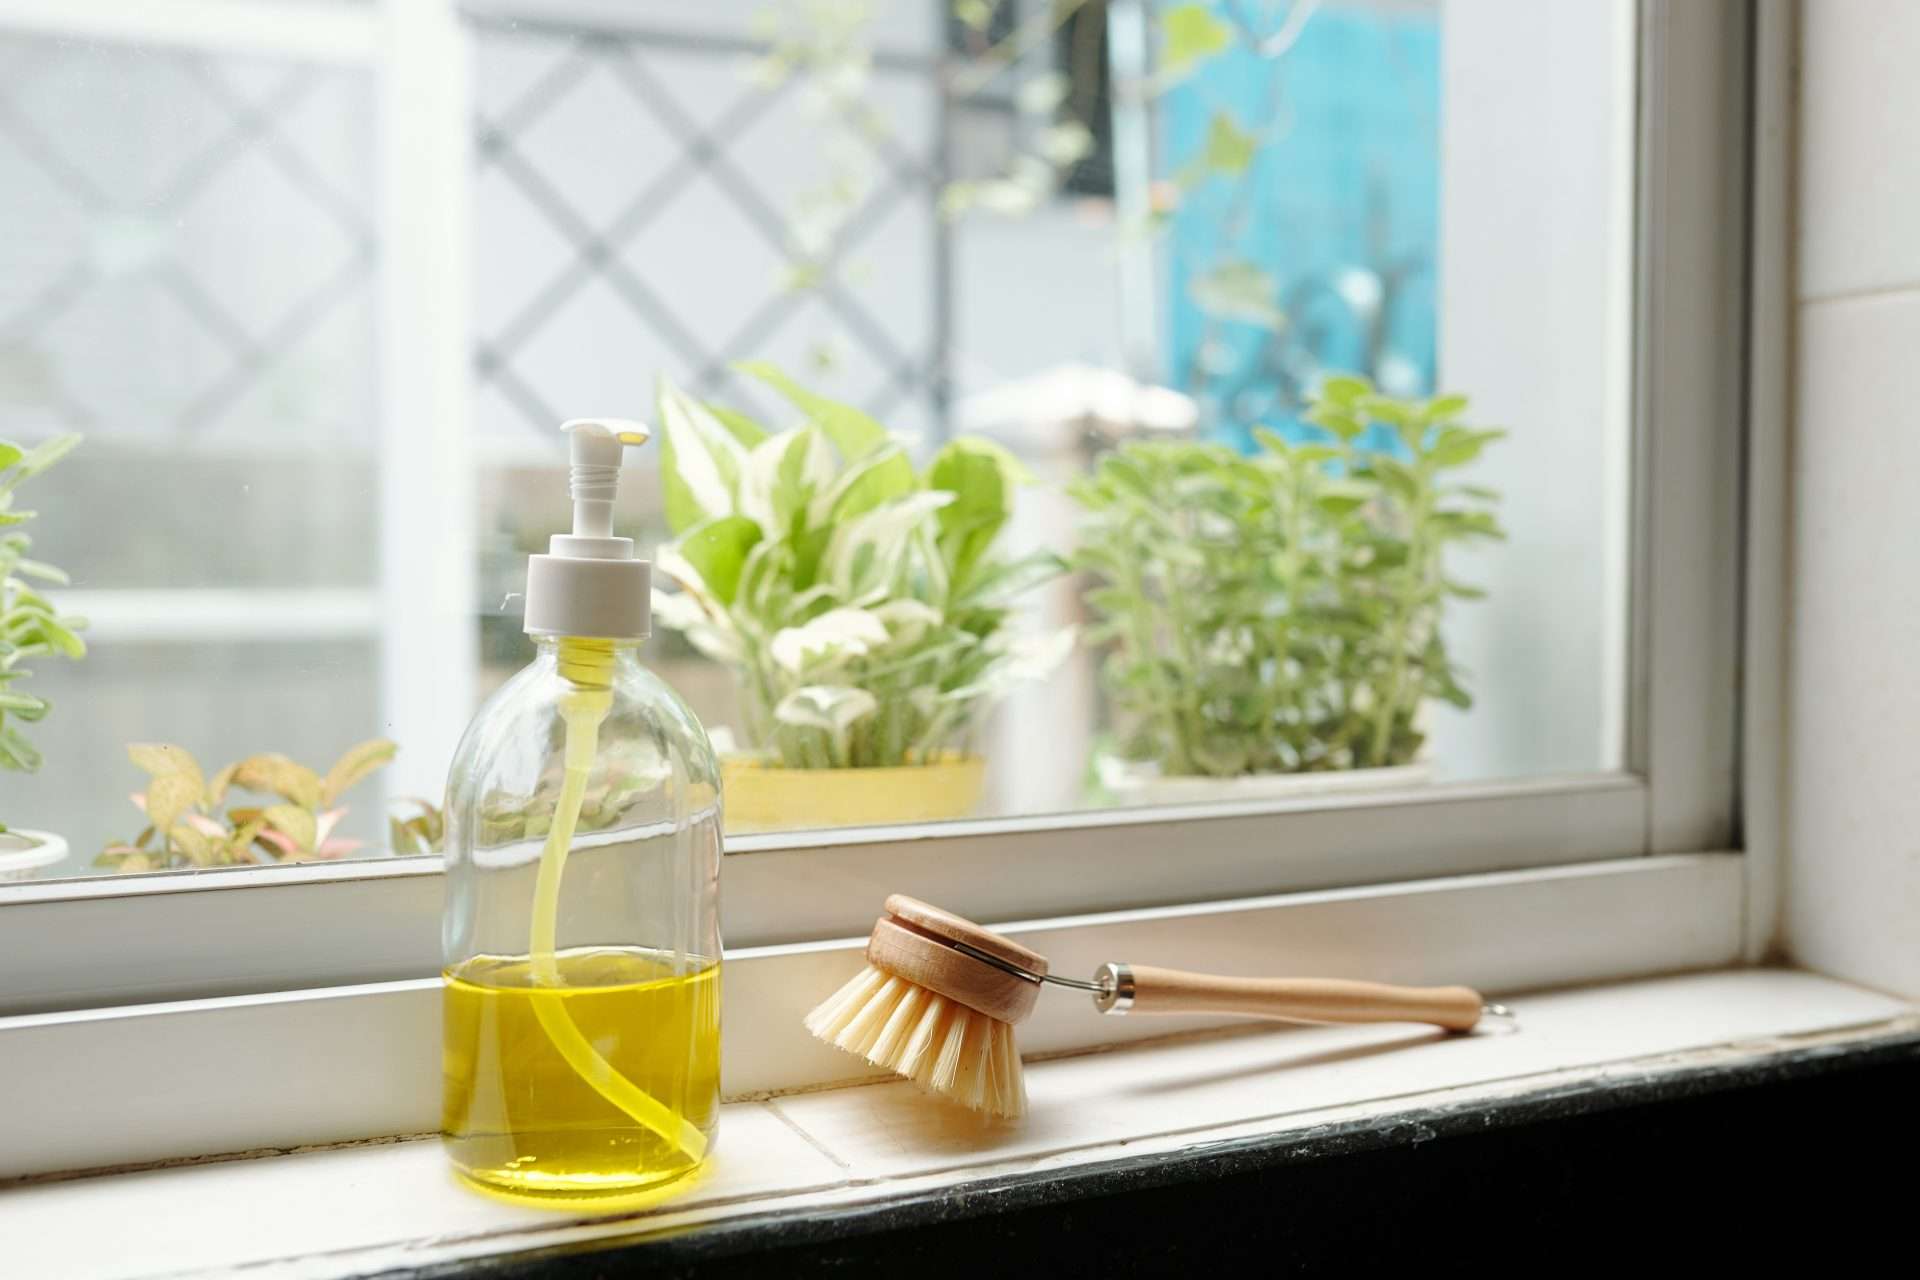 Dish soap in bottle on window ledge